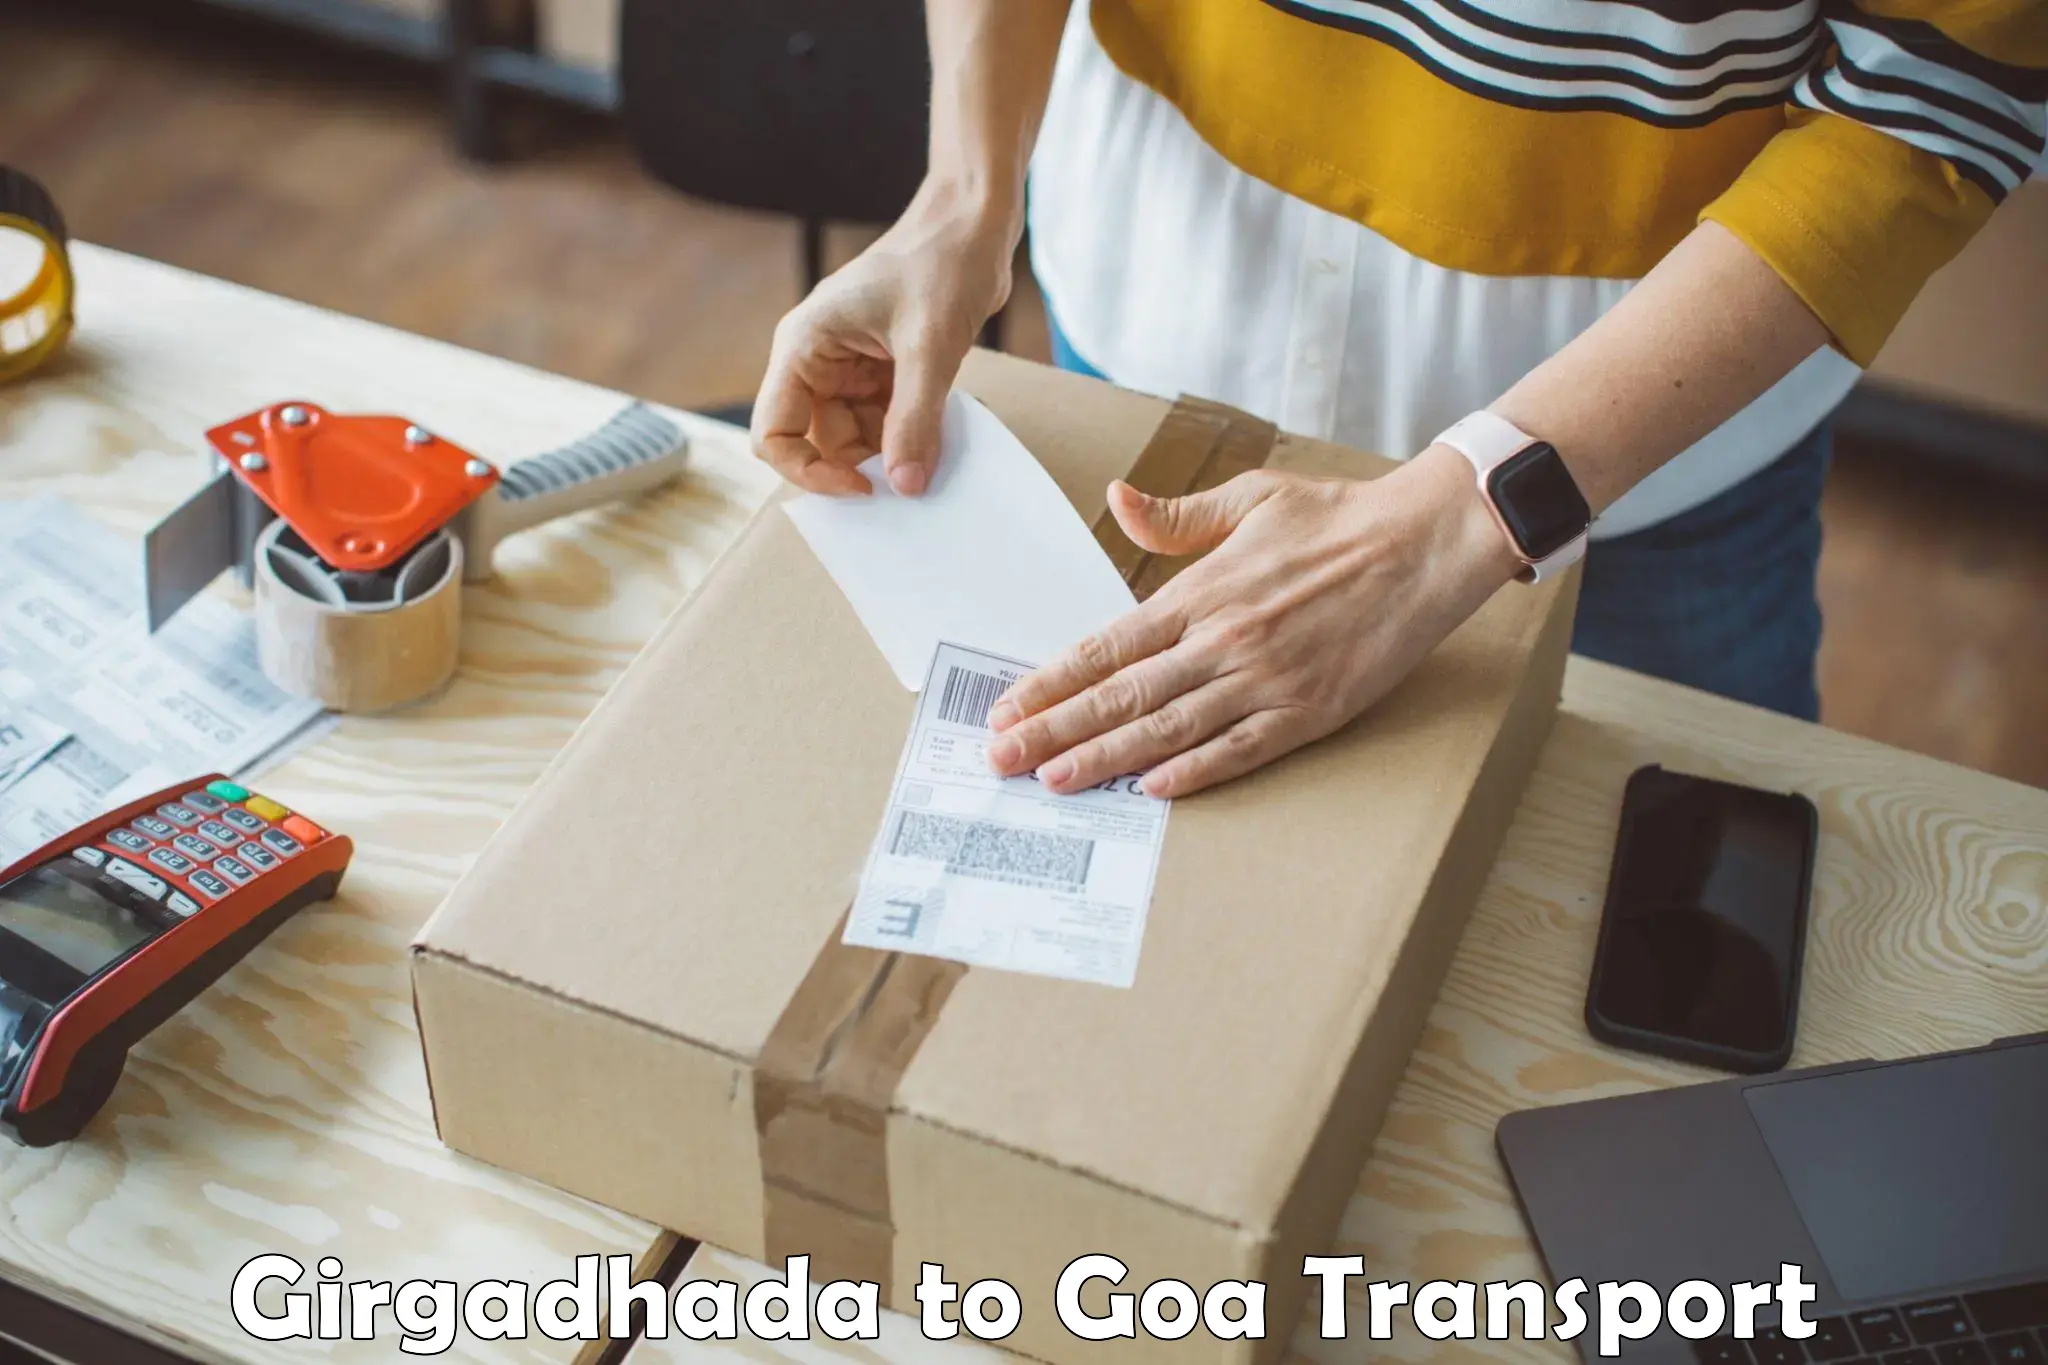 Transport in sharing Girgadhada to Vasco da Gama